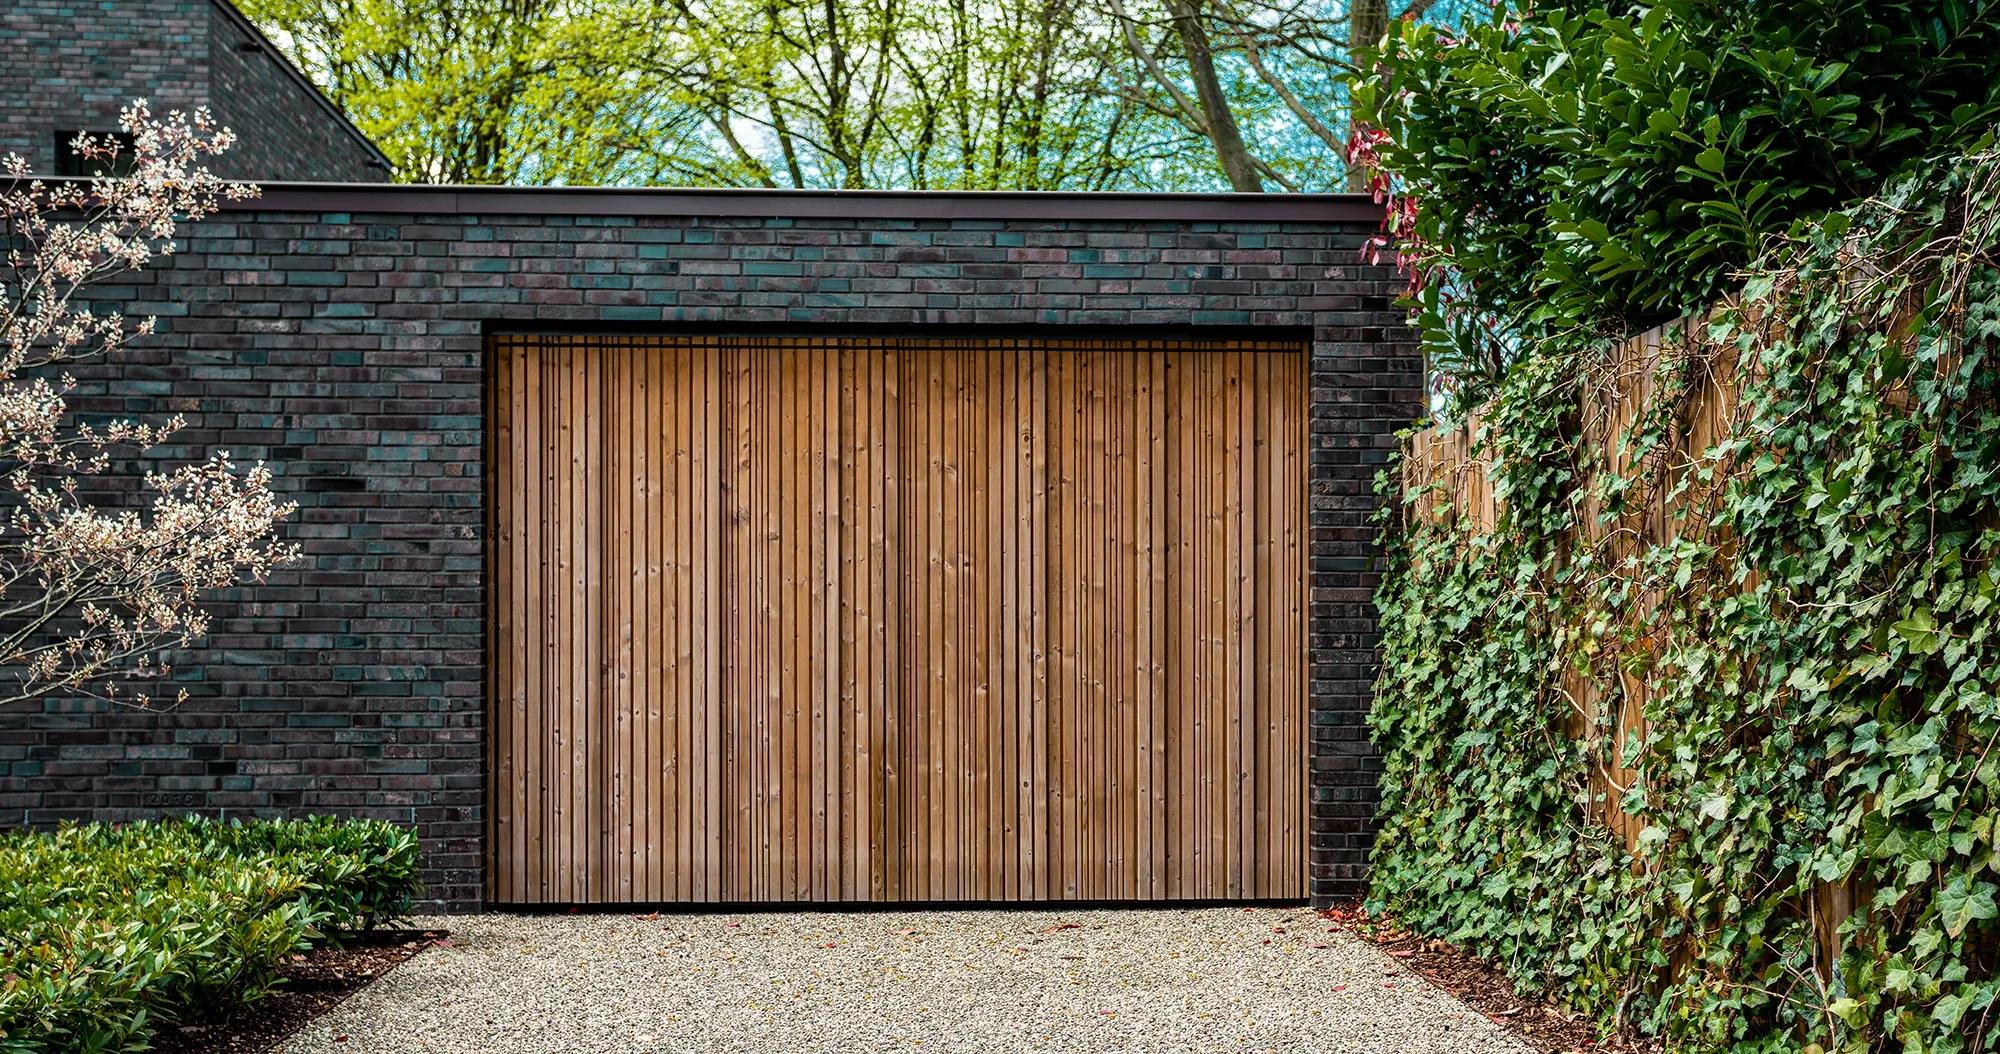 Tegelhus med elegant garagedörr och carport, omgiven av ett vackert staket klätt i murgröna - Skapa funktionella och stilfulla utrymmen med våra garage- och carporttjänster.